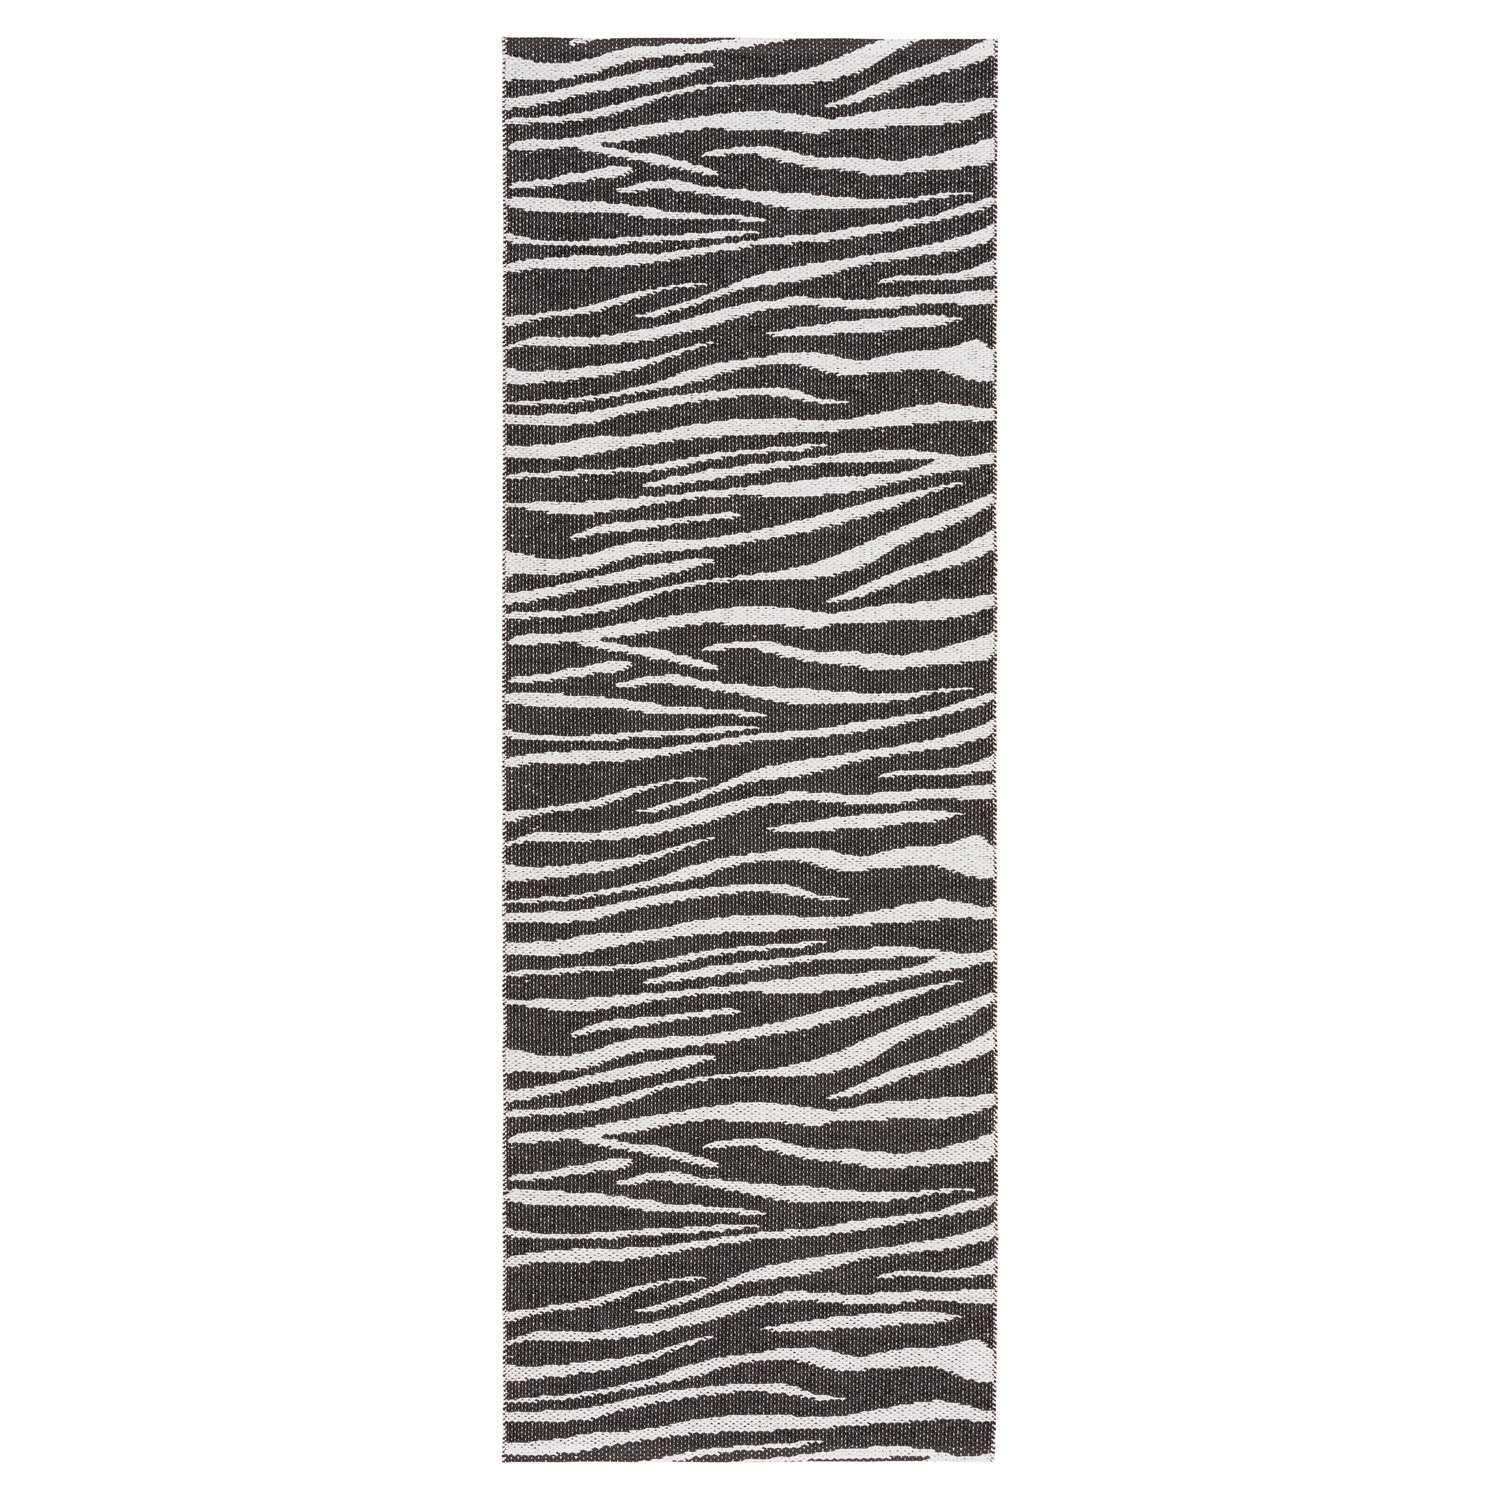 Horredsmattan Teppich Zebra Black für Innen und Aussen Made in Sweden since 1956 UV-Beständig